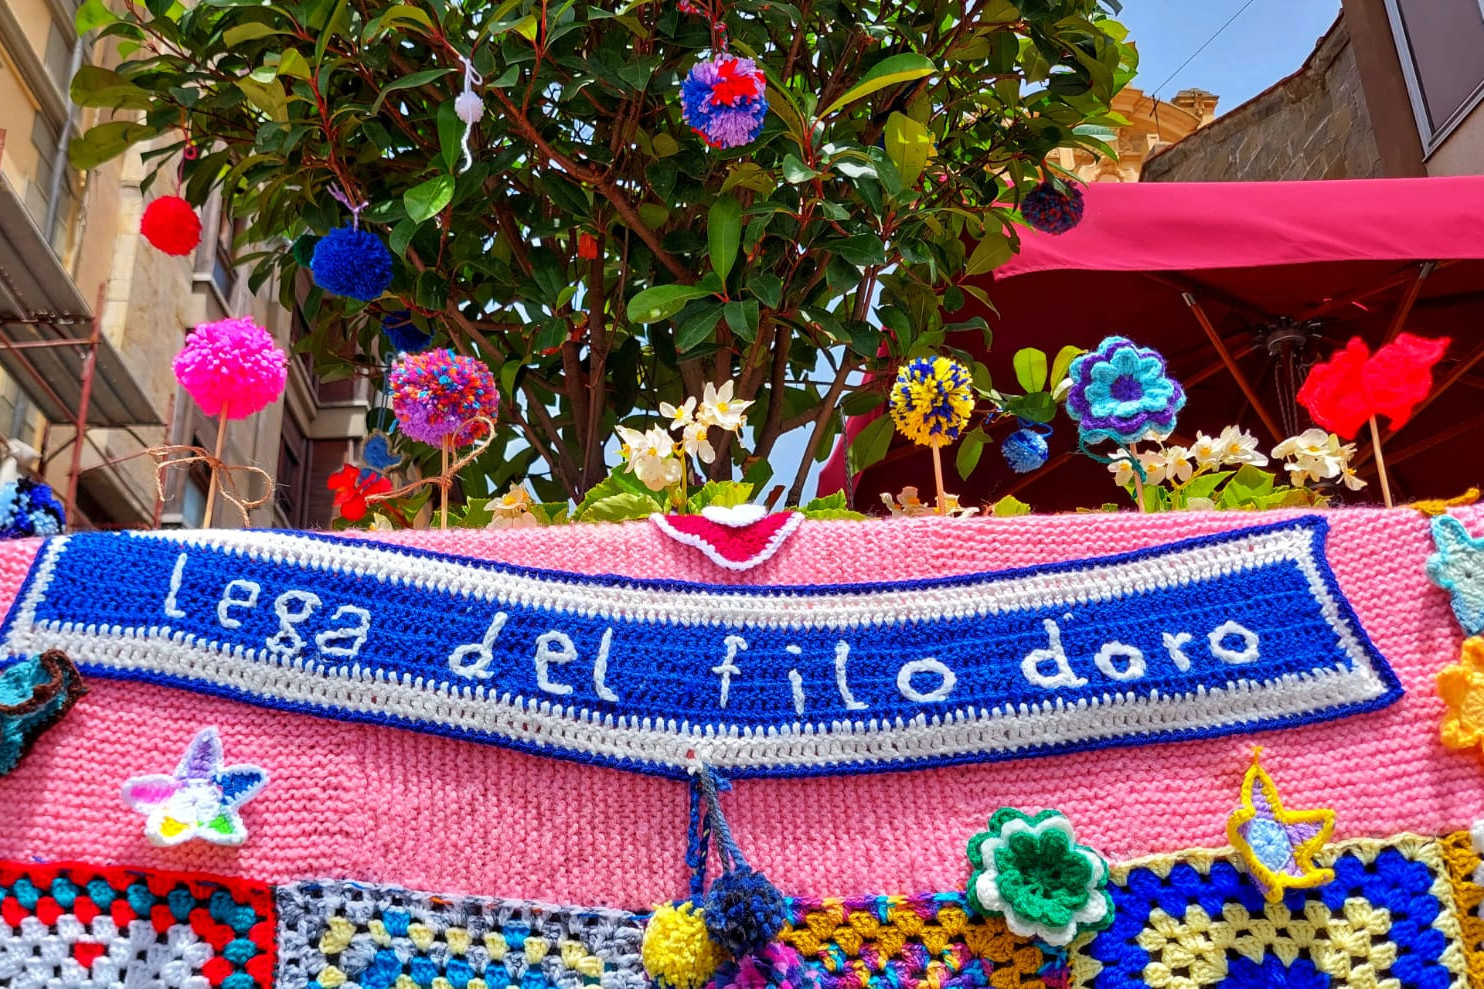 Elementi colorati dello yarn bombing di pisa con la scritta Lega del Filo d'oro in bianco sull'azzurro